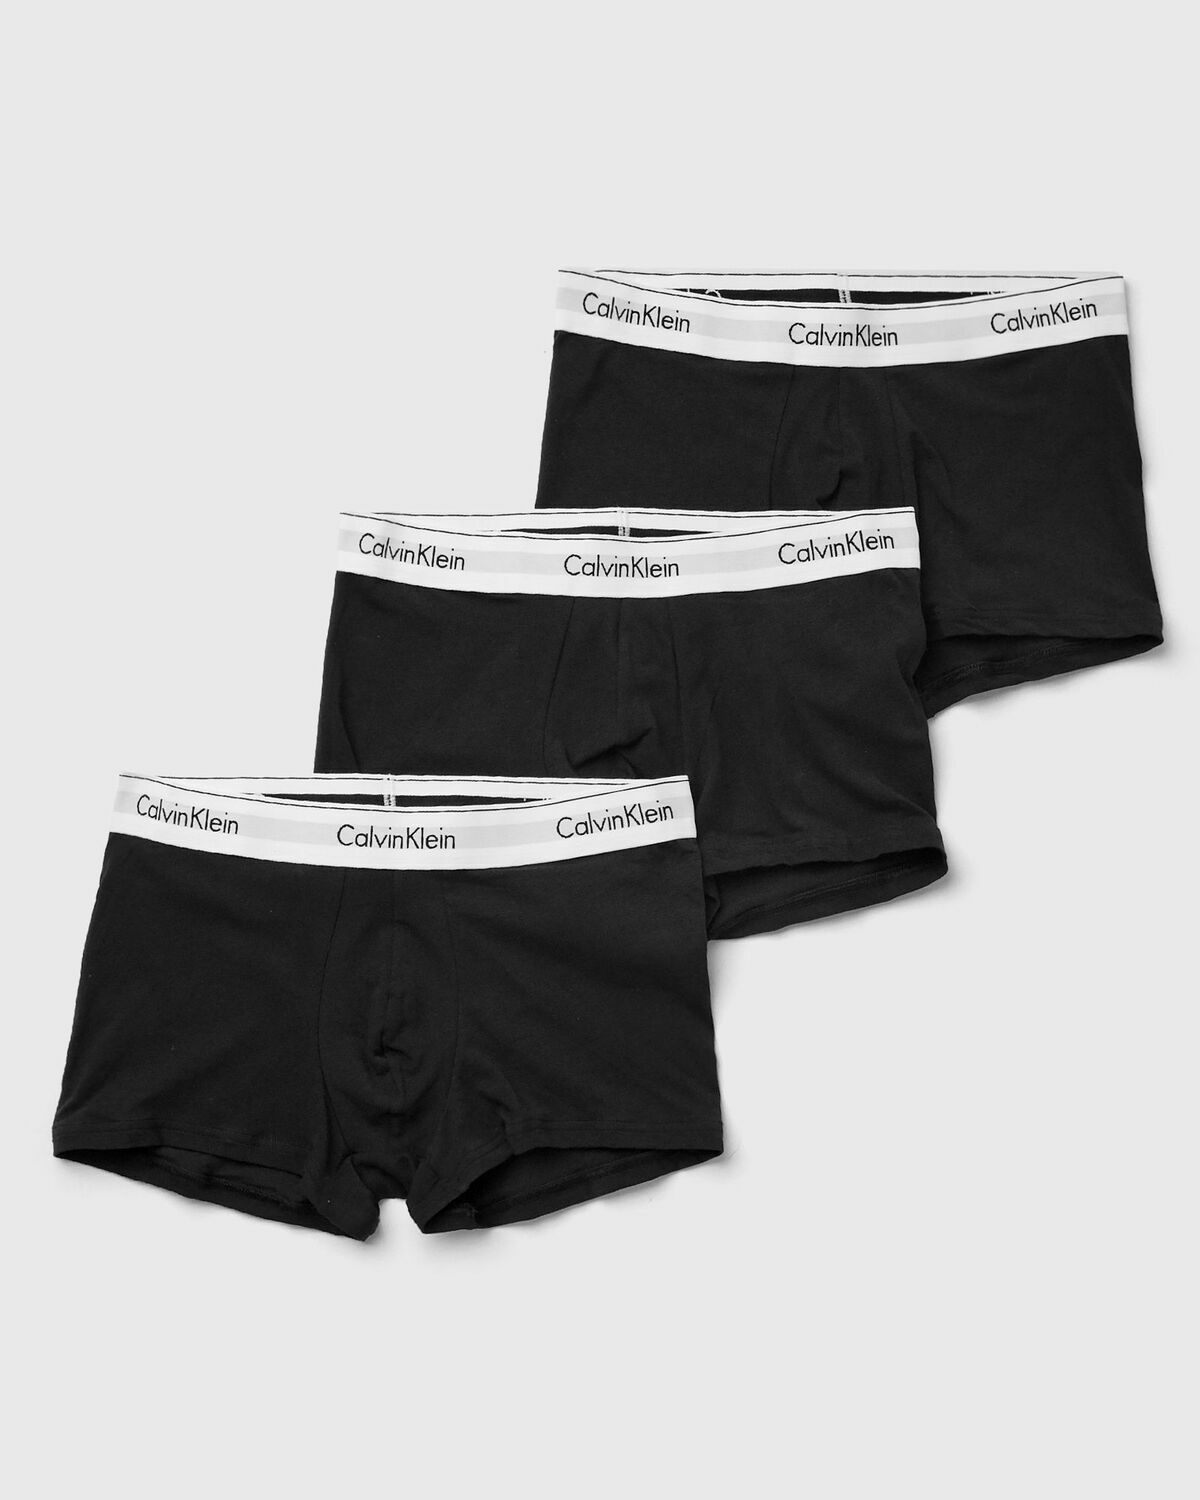 Calvin Klein Underwear Modern Cotton Stretch Trunk 3 Pack Black - Mens -  Boxers & Briefs Calvin Klein Underwear